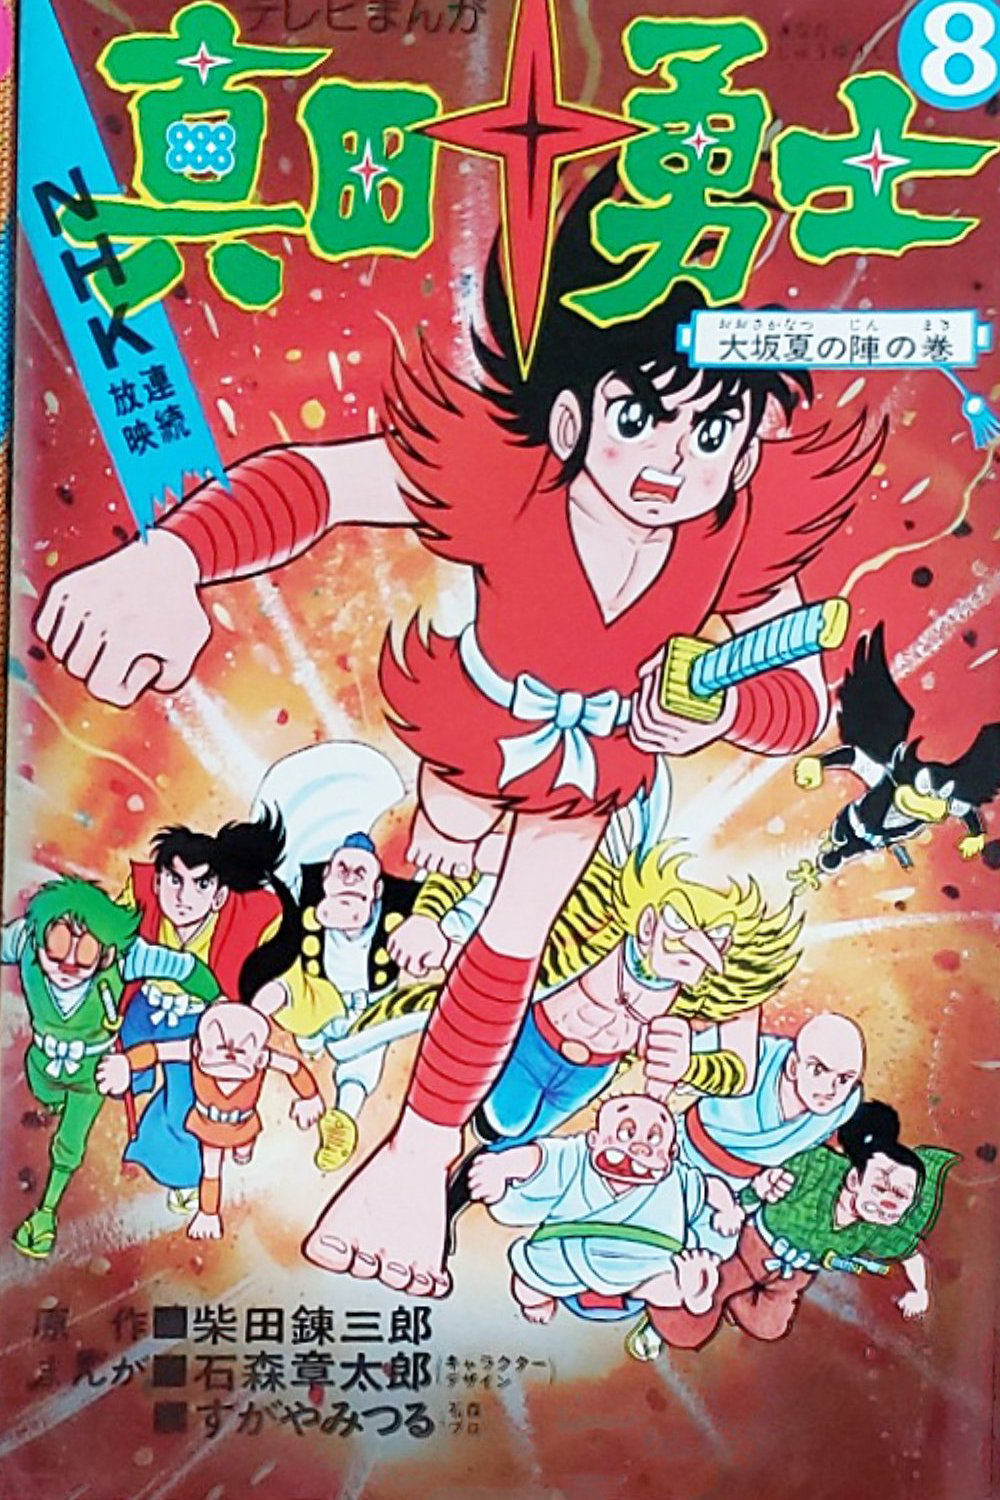 The Ten Heroes of Sanada cover 0